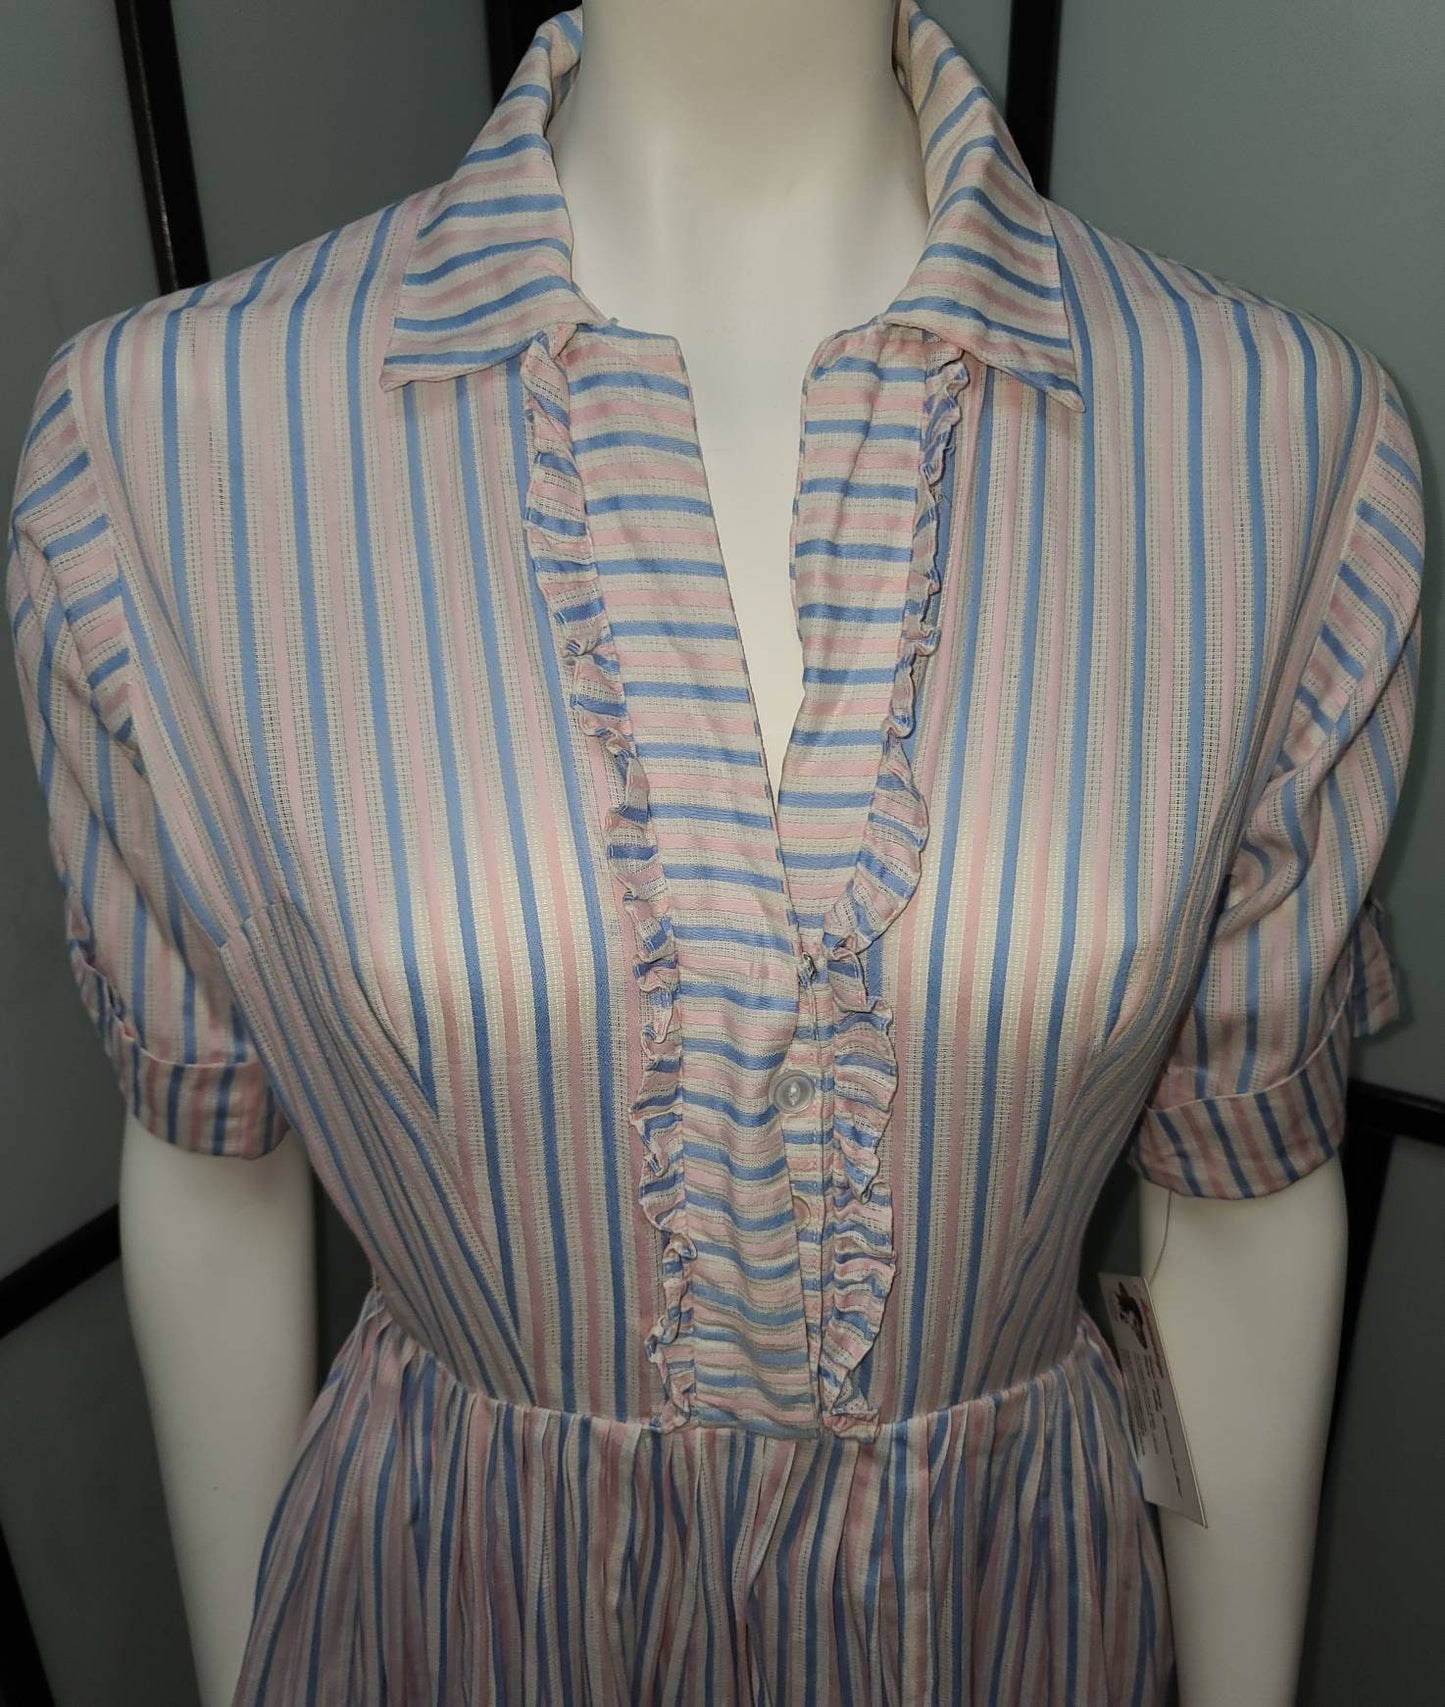 Vintage 1950s Dress Pink Blue White Stripe Lightweight Cotton Summer Dress Ruffle Trim Mid Century Rockabilly S